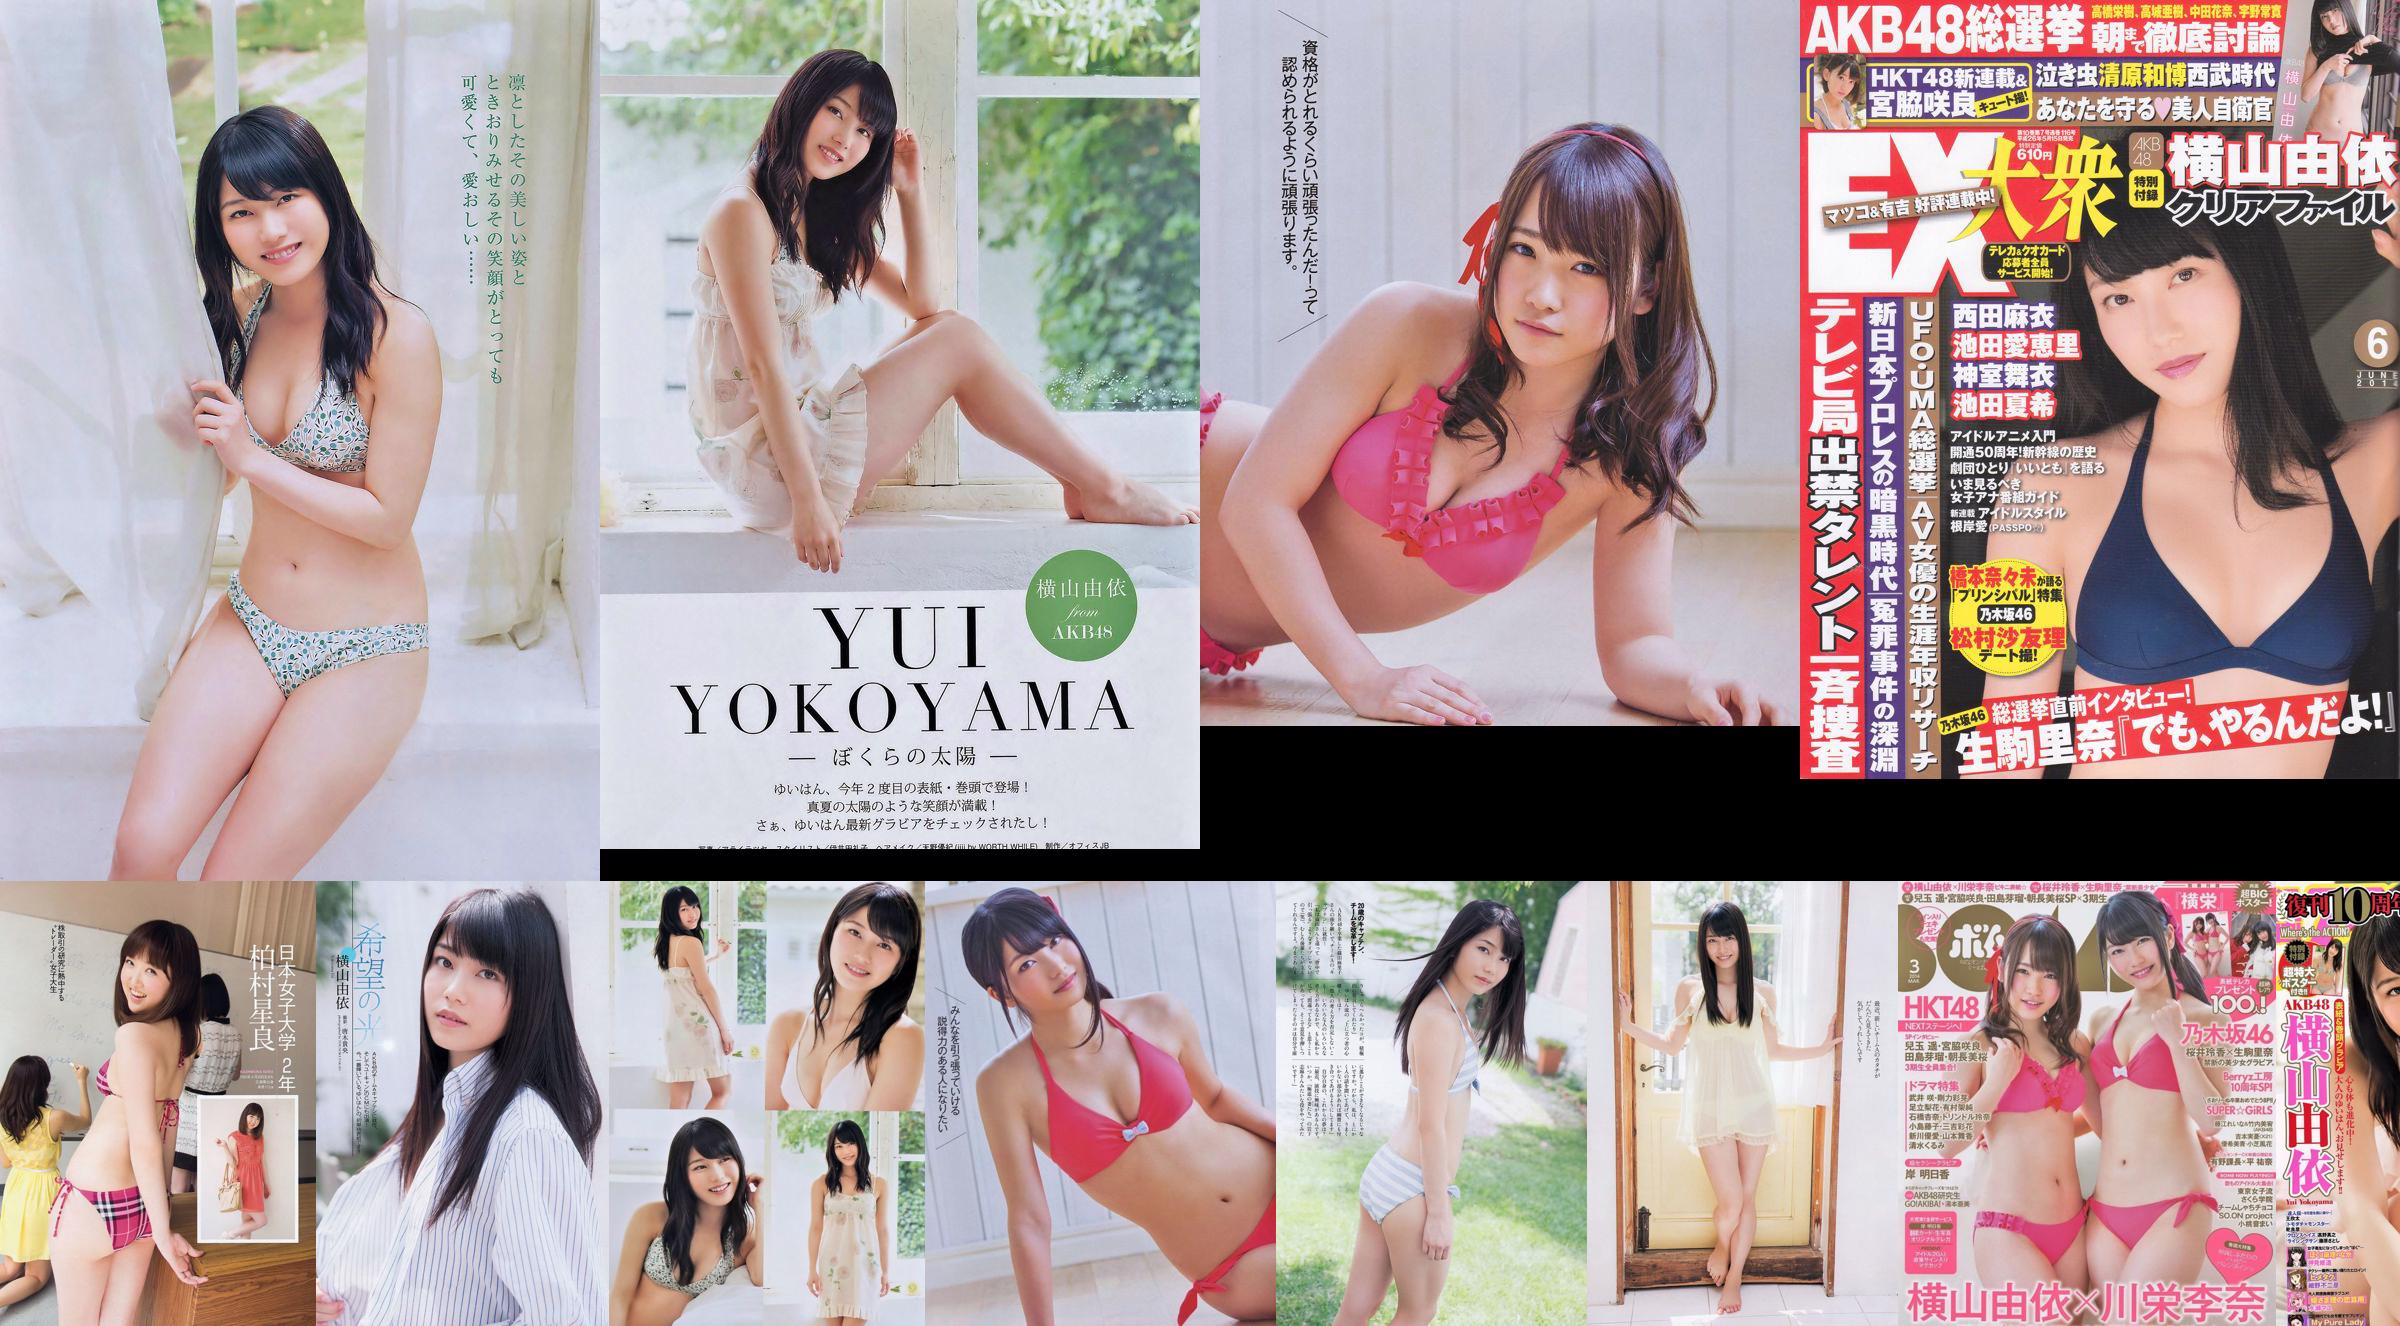 [Bomb Magazine] 2014 No.03 Fotografia di Yui Yokoyama Rina Kawaei No.162ce2 Pagina 1